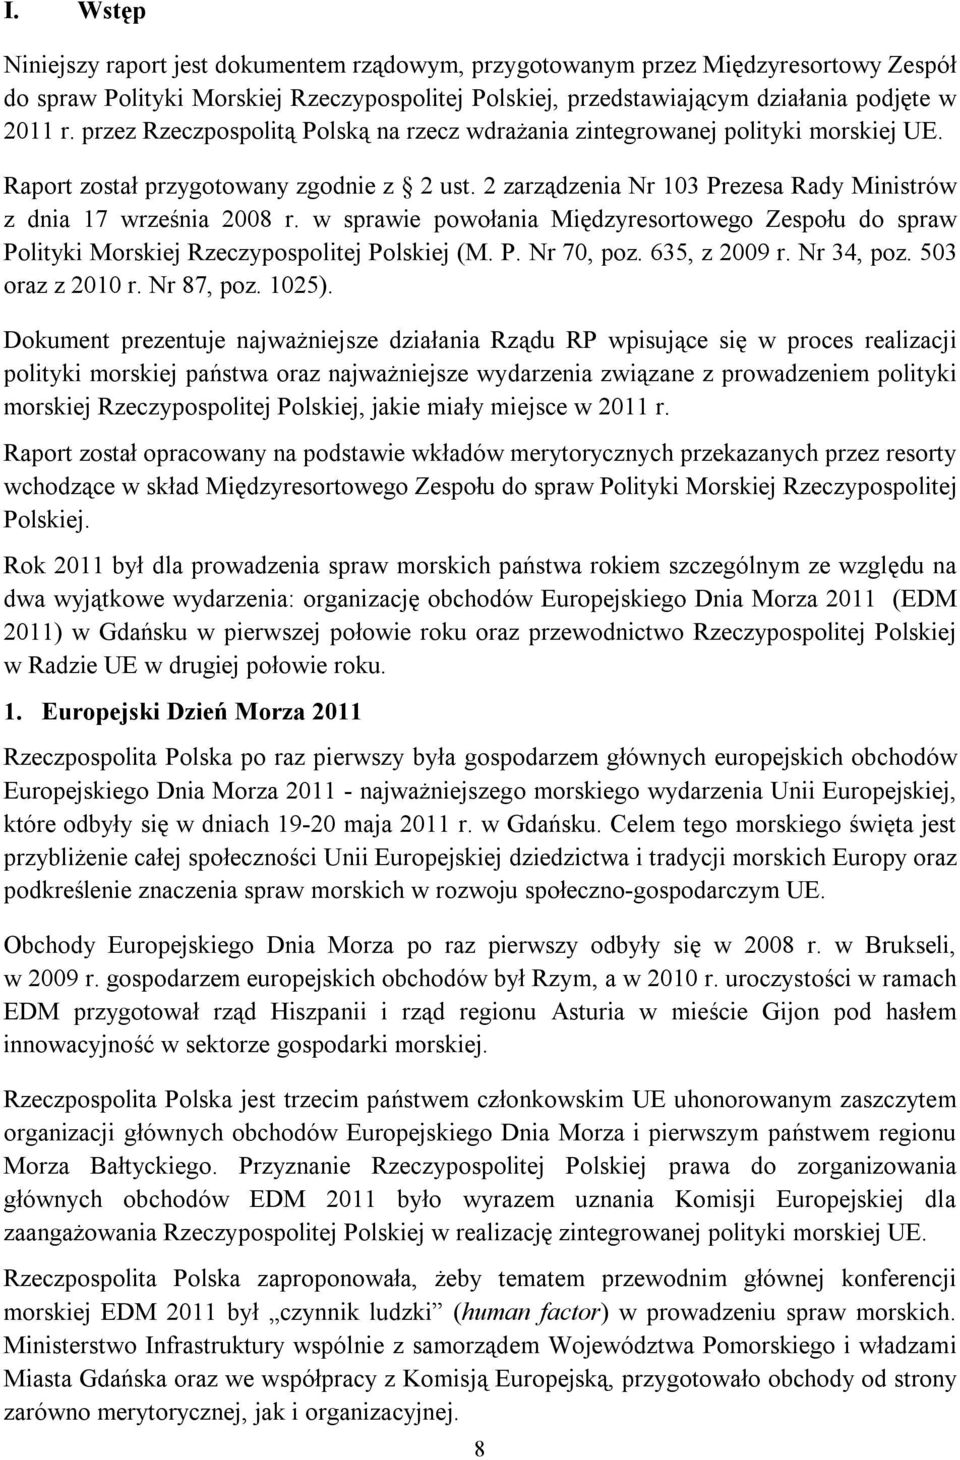 w sprawie powołania Międzyresortowego Zespołu do spraw Polityki Morskiej Rzeczypospolitej Polskiej (M. P. Nr 70, poz. 635, z 2009 r. Nr 34, poz. 503 oraz z 2010 r. Nr 87, poz. 1025).